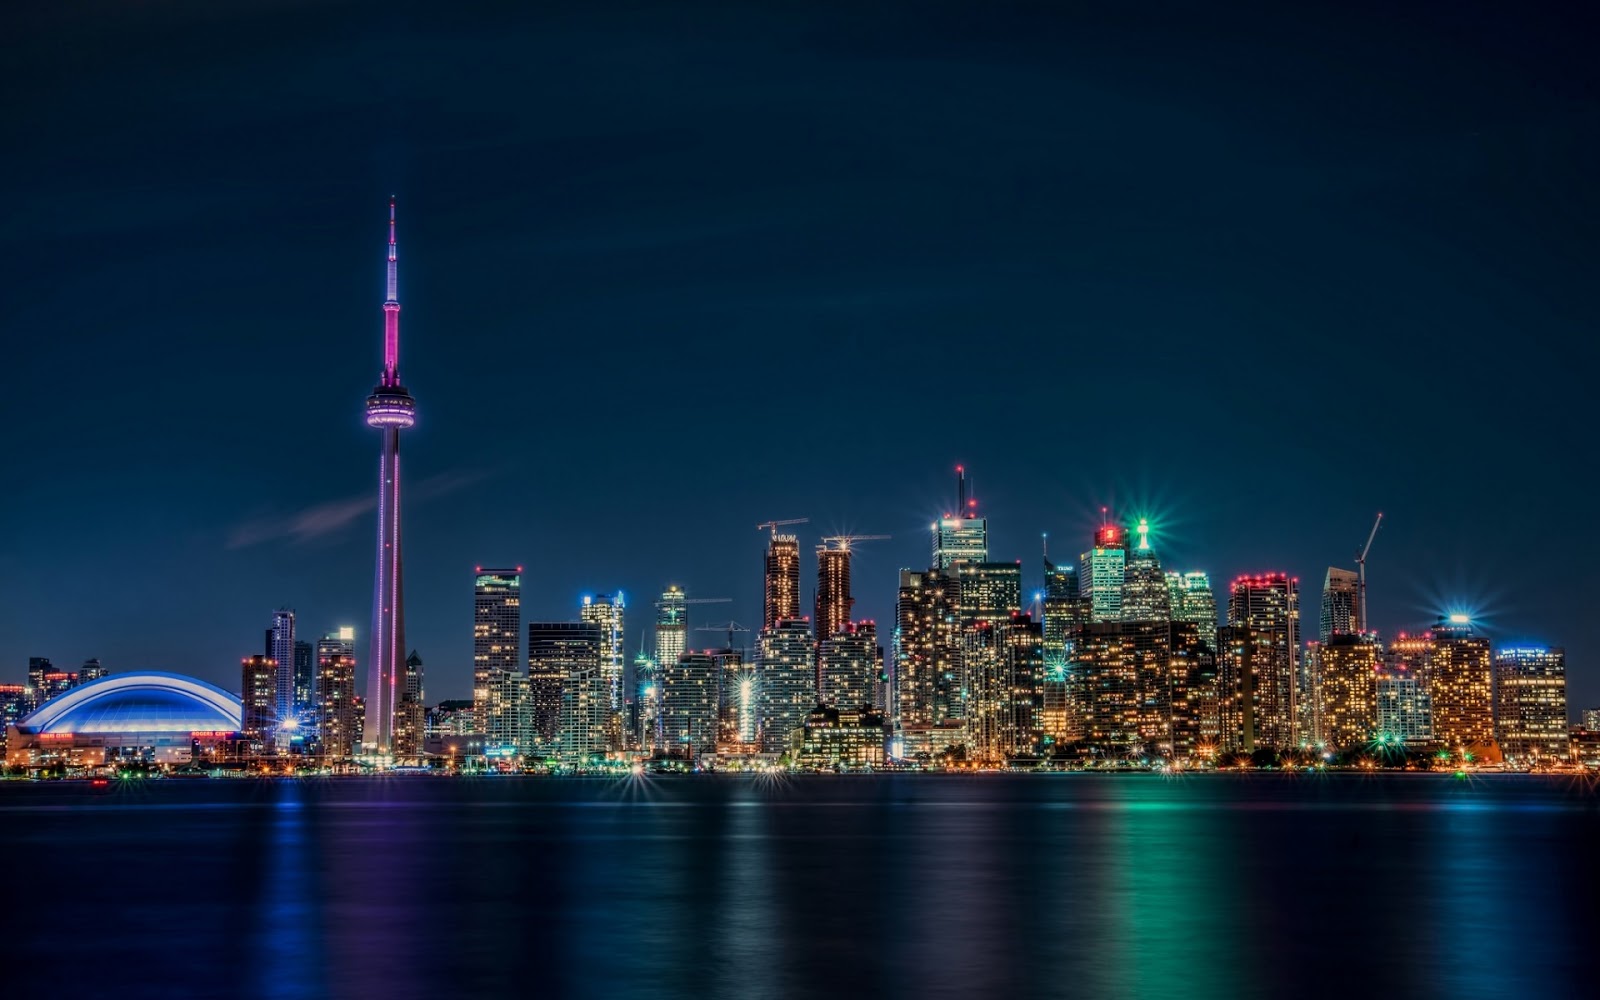 Ciudad de Toronto, Ontario, Canadá. (Vista Nocturna)